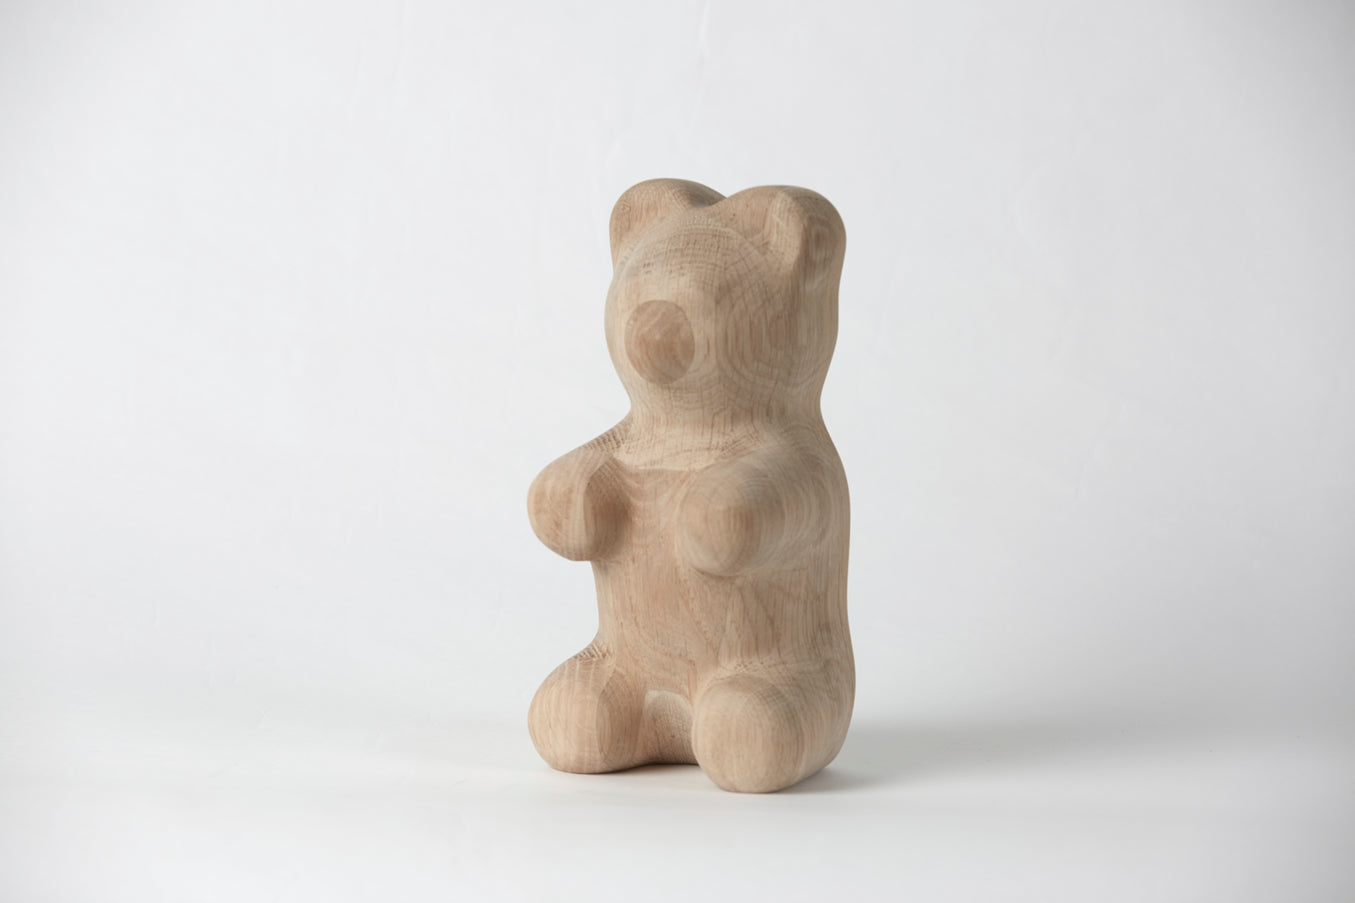 Dębowa figura z gumowatego niedźwiedzia chłopięcego, duża